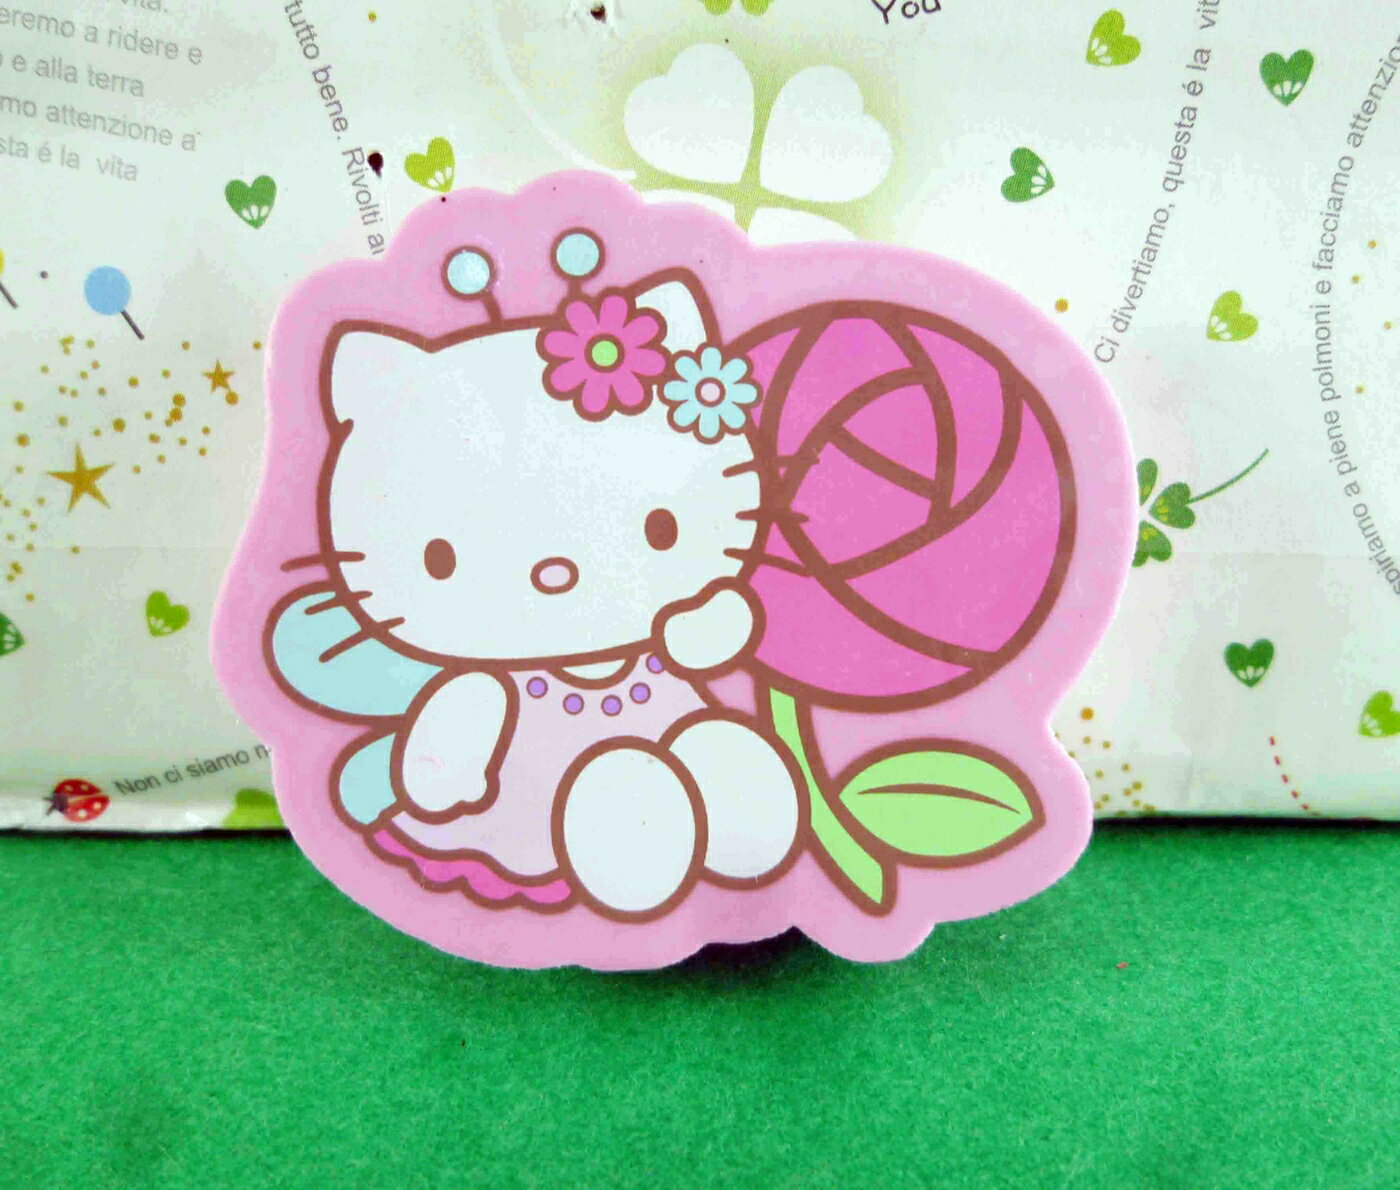 【震撼精品百貨】Hello Kitty 凱蒂貓 造型橡皮擦-粉玫瑰 震撼日式精品百貨